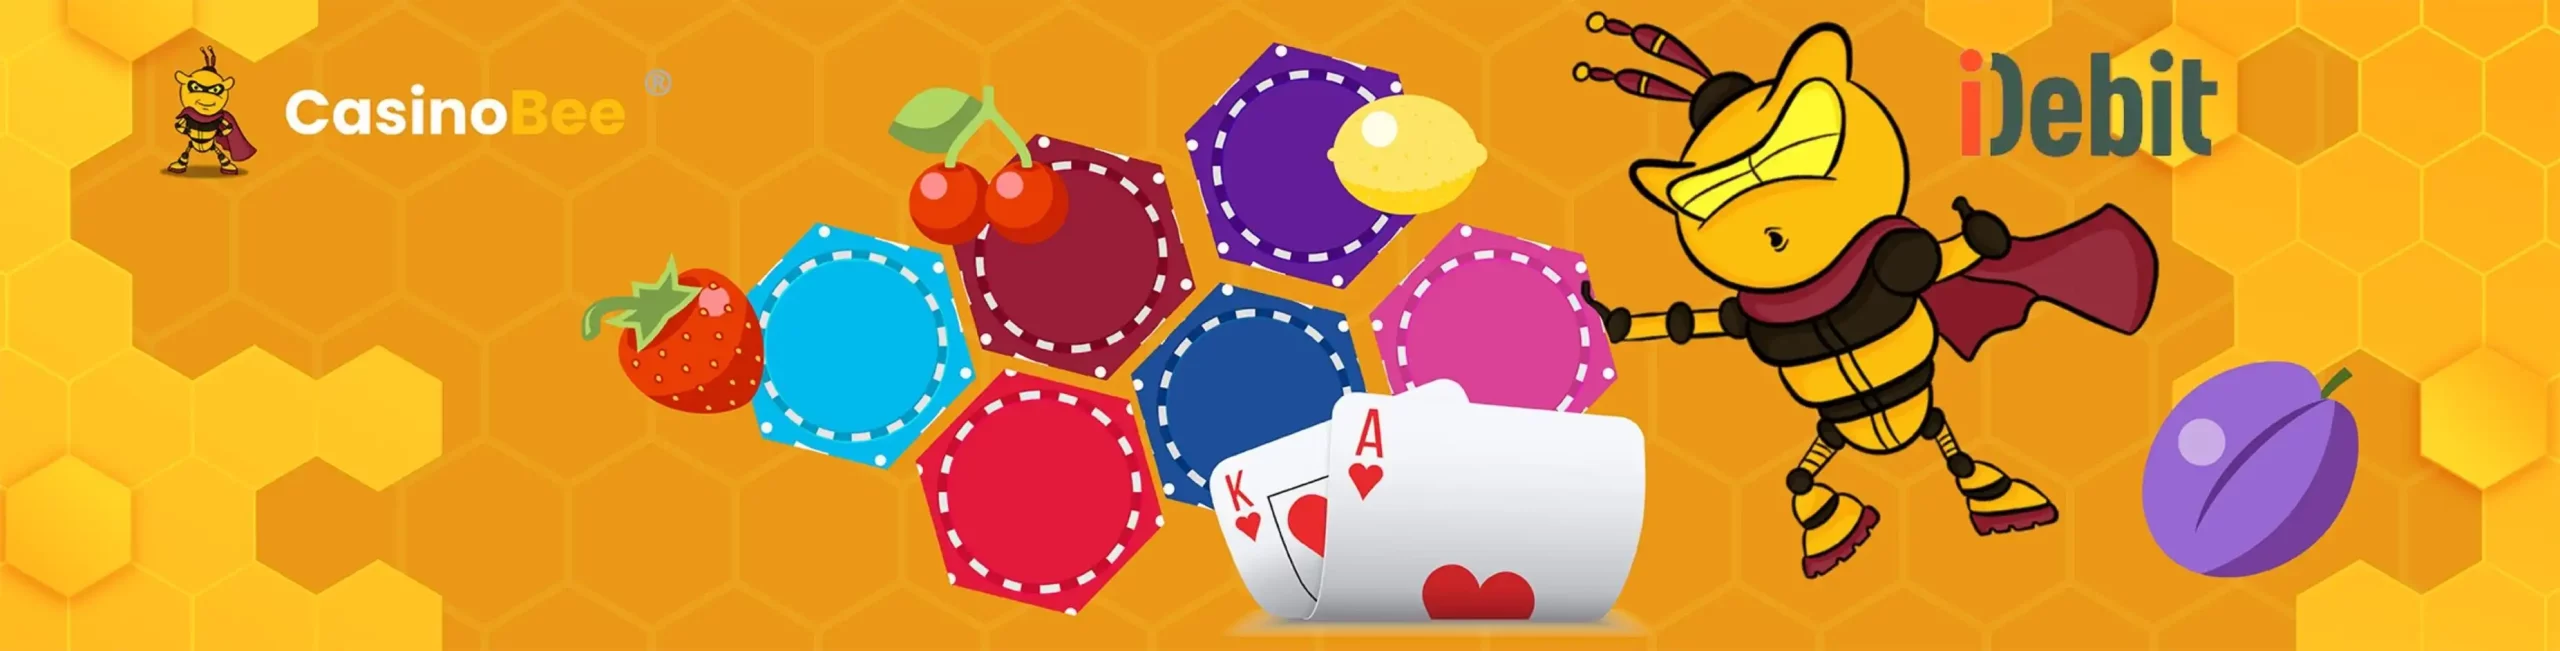 iDebit Casinos Overview
